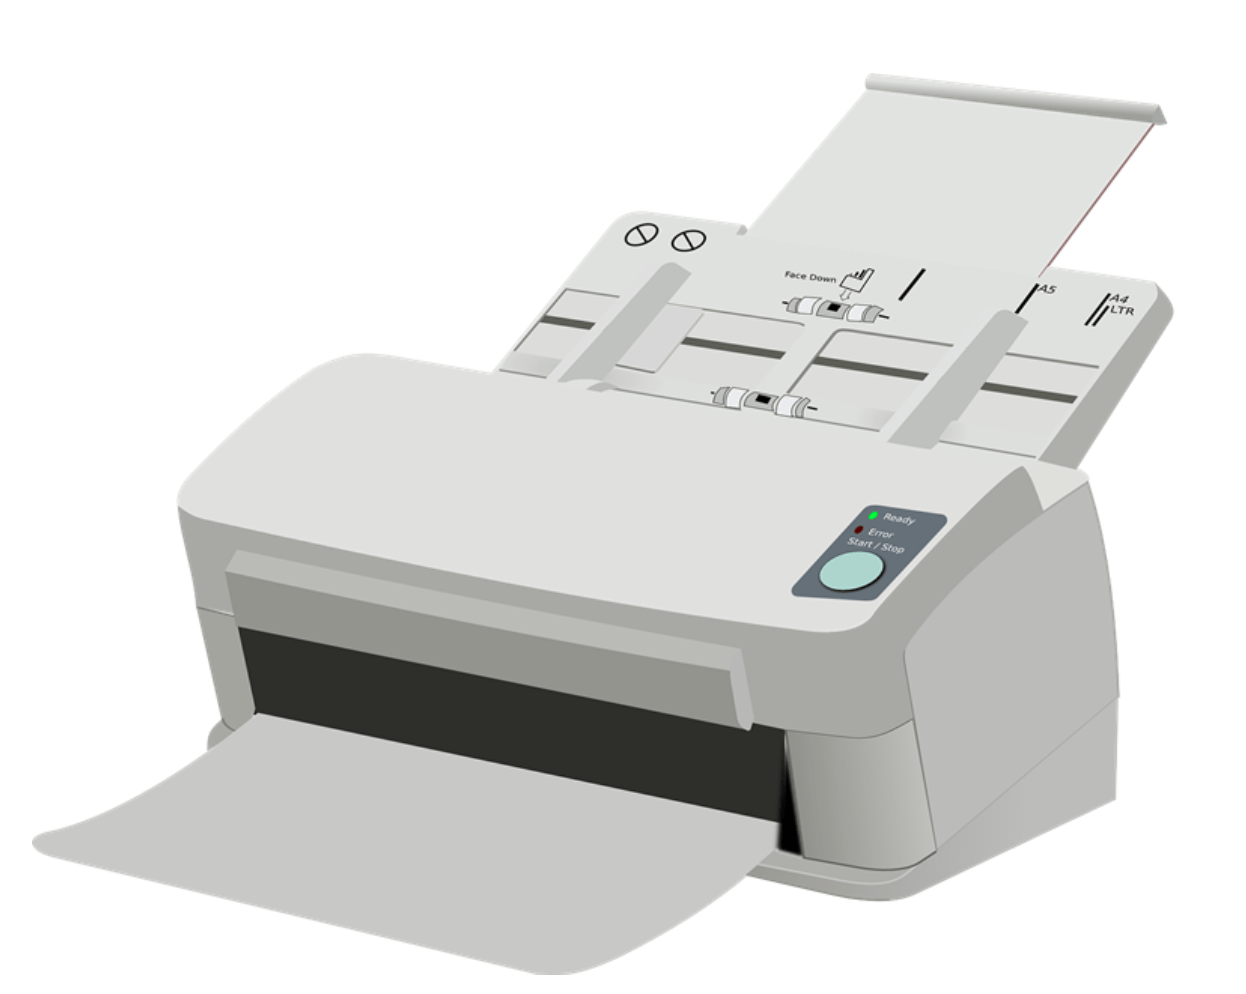 Impresora con escaner: descubre todos sus usos y funciones